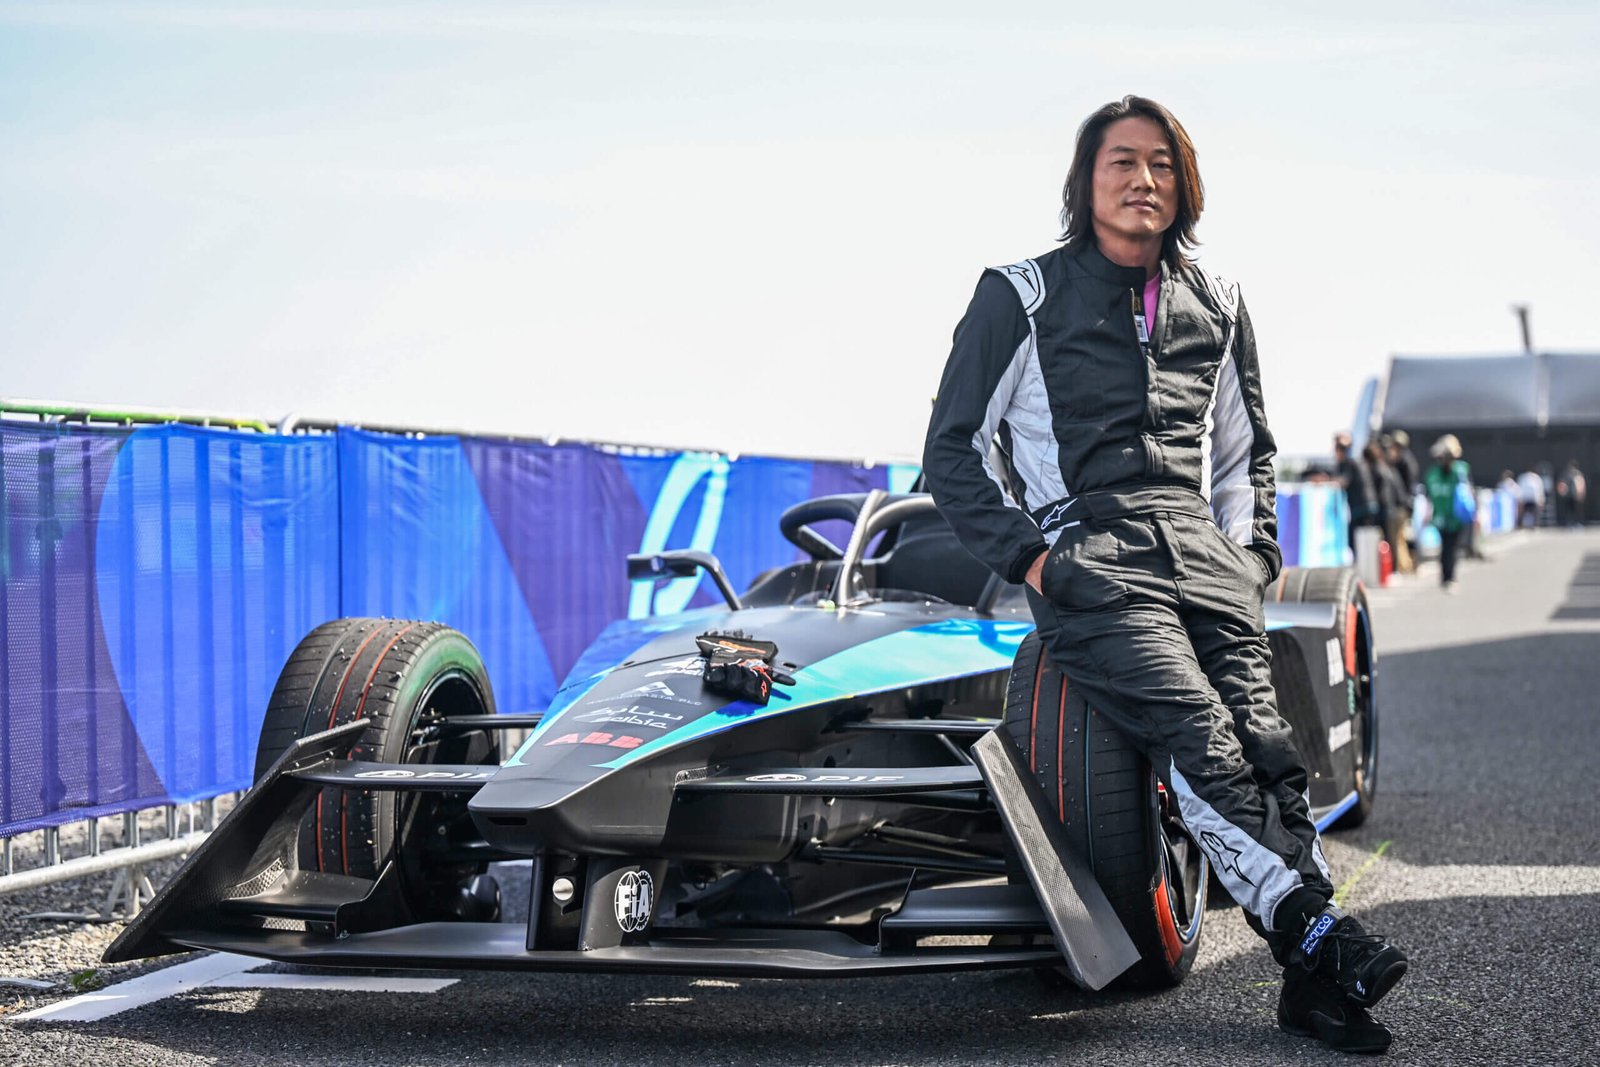 Estreia Estelar: Sung Kang assume volante no e-Prix de Tóquio na presença de Yuki Tsunoda e das lendas do automobilismo Emerson Fittipaldi e Takumo Sato